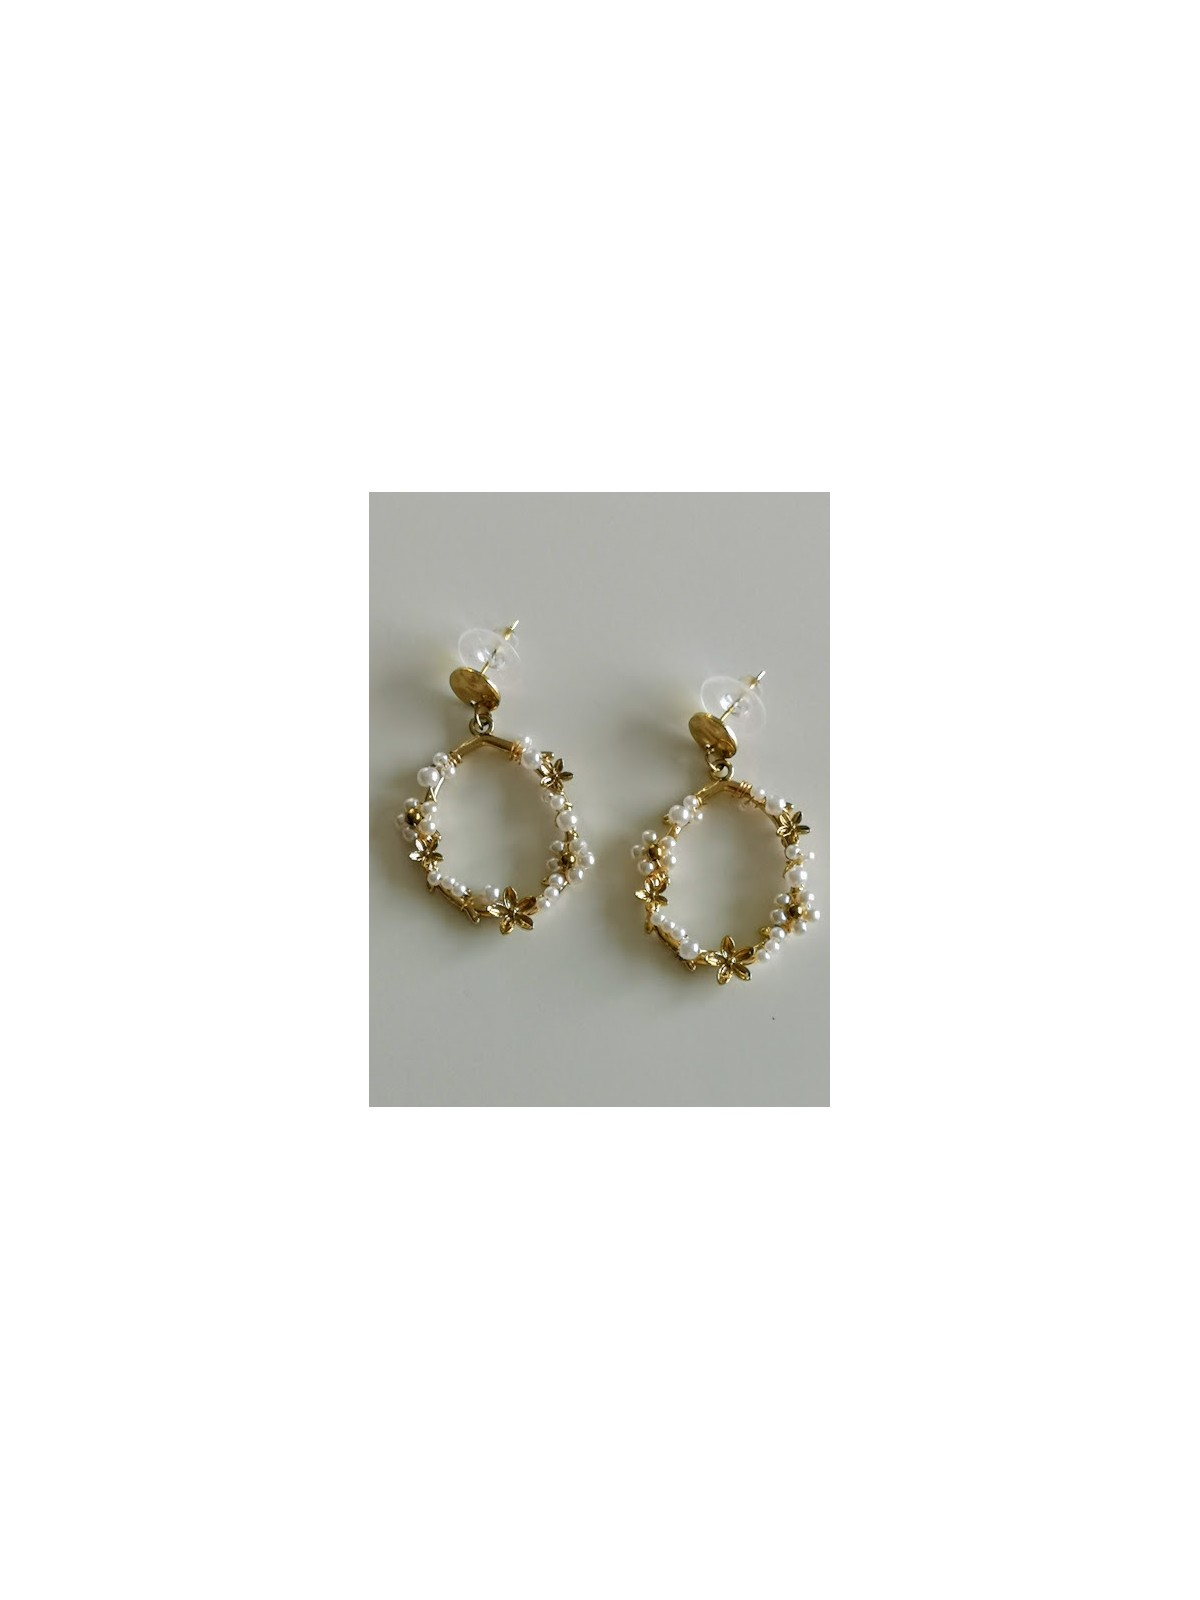 Boucles d'oreilles perles blanches et détails dorés | 1 vue entière | Tilleulmenthe boutique de mode en ligne